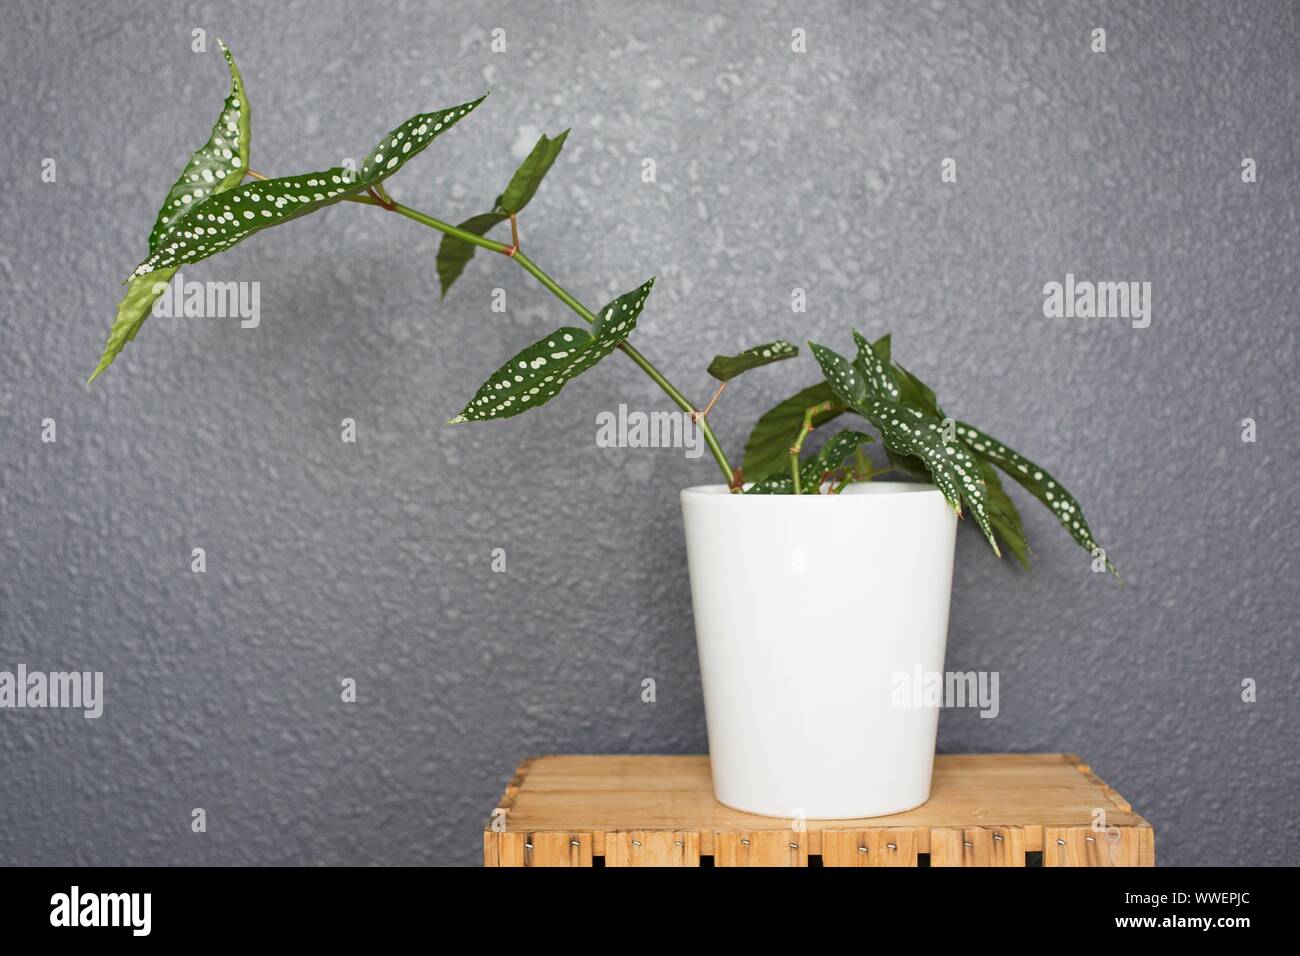 Begonia fibrosa immagini e fotografie stock ad alta risoluzione - Alamy